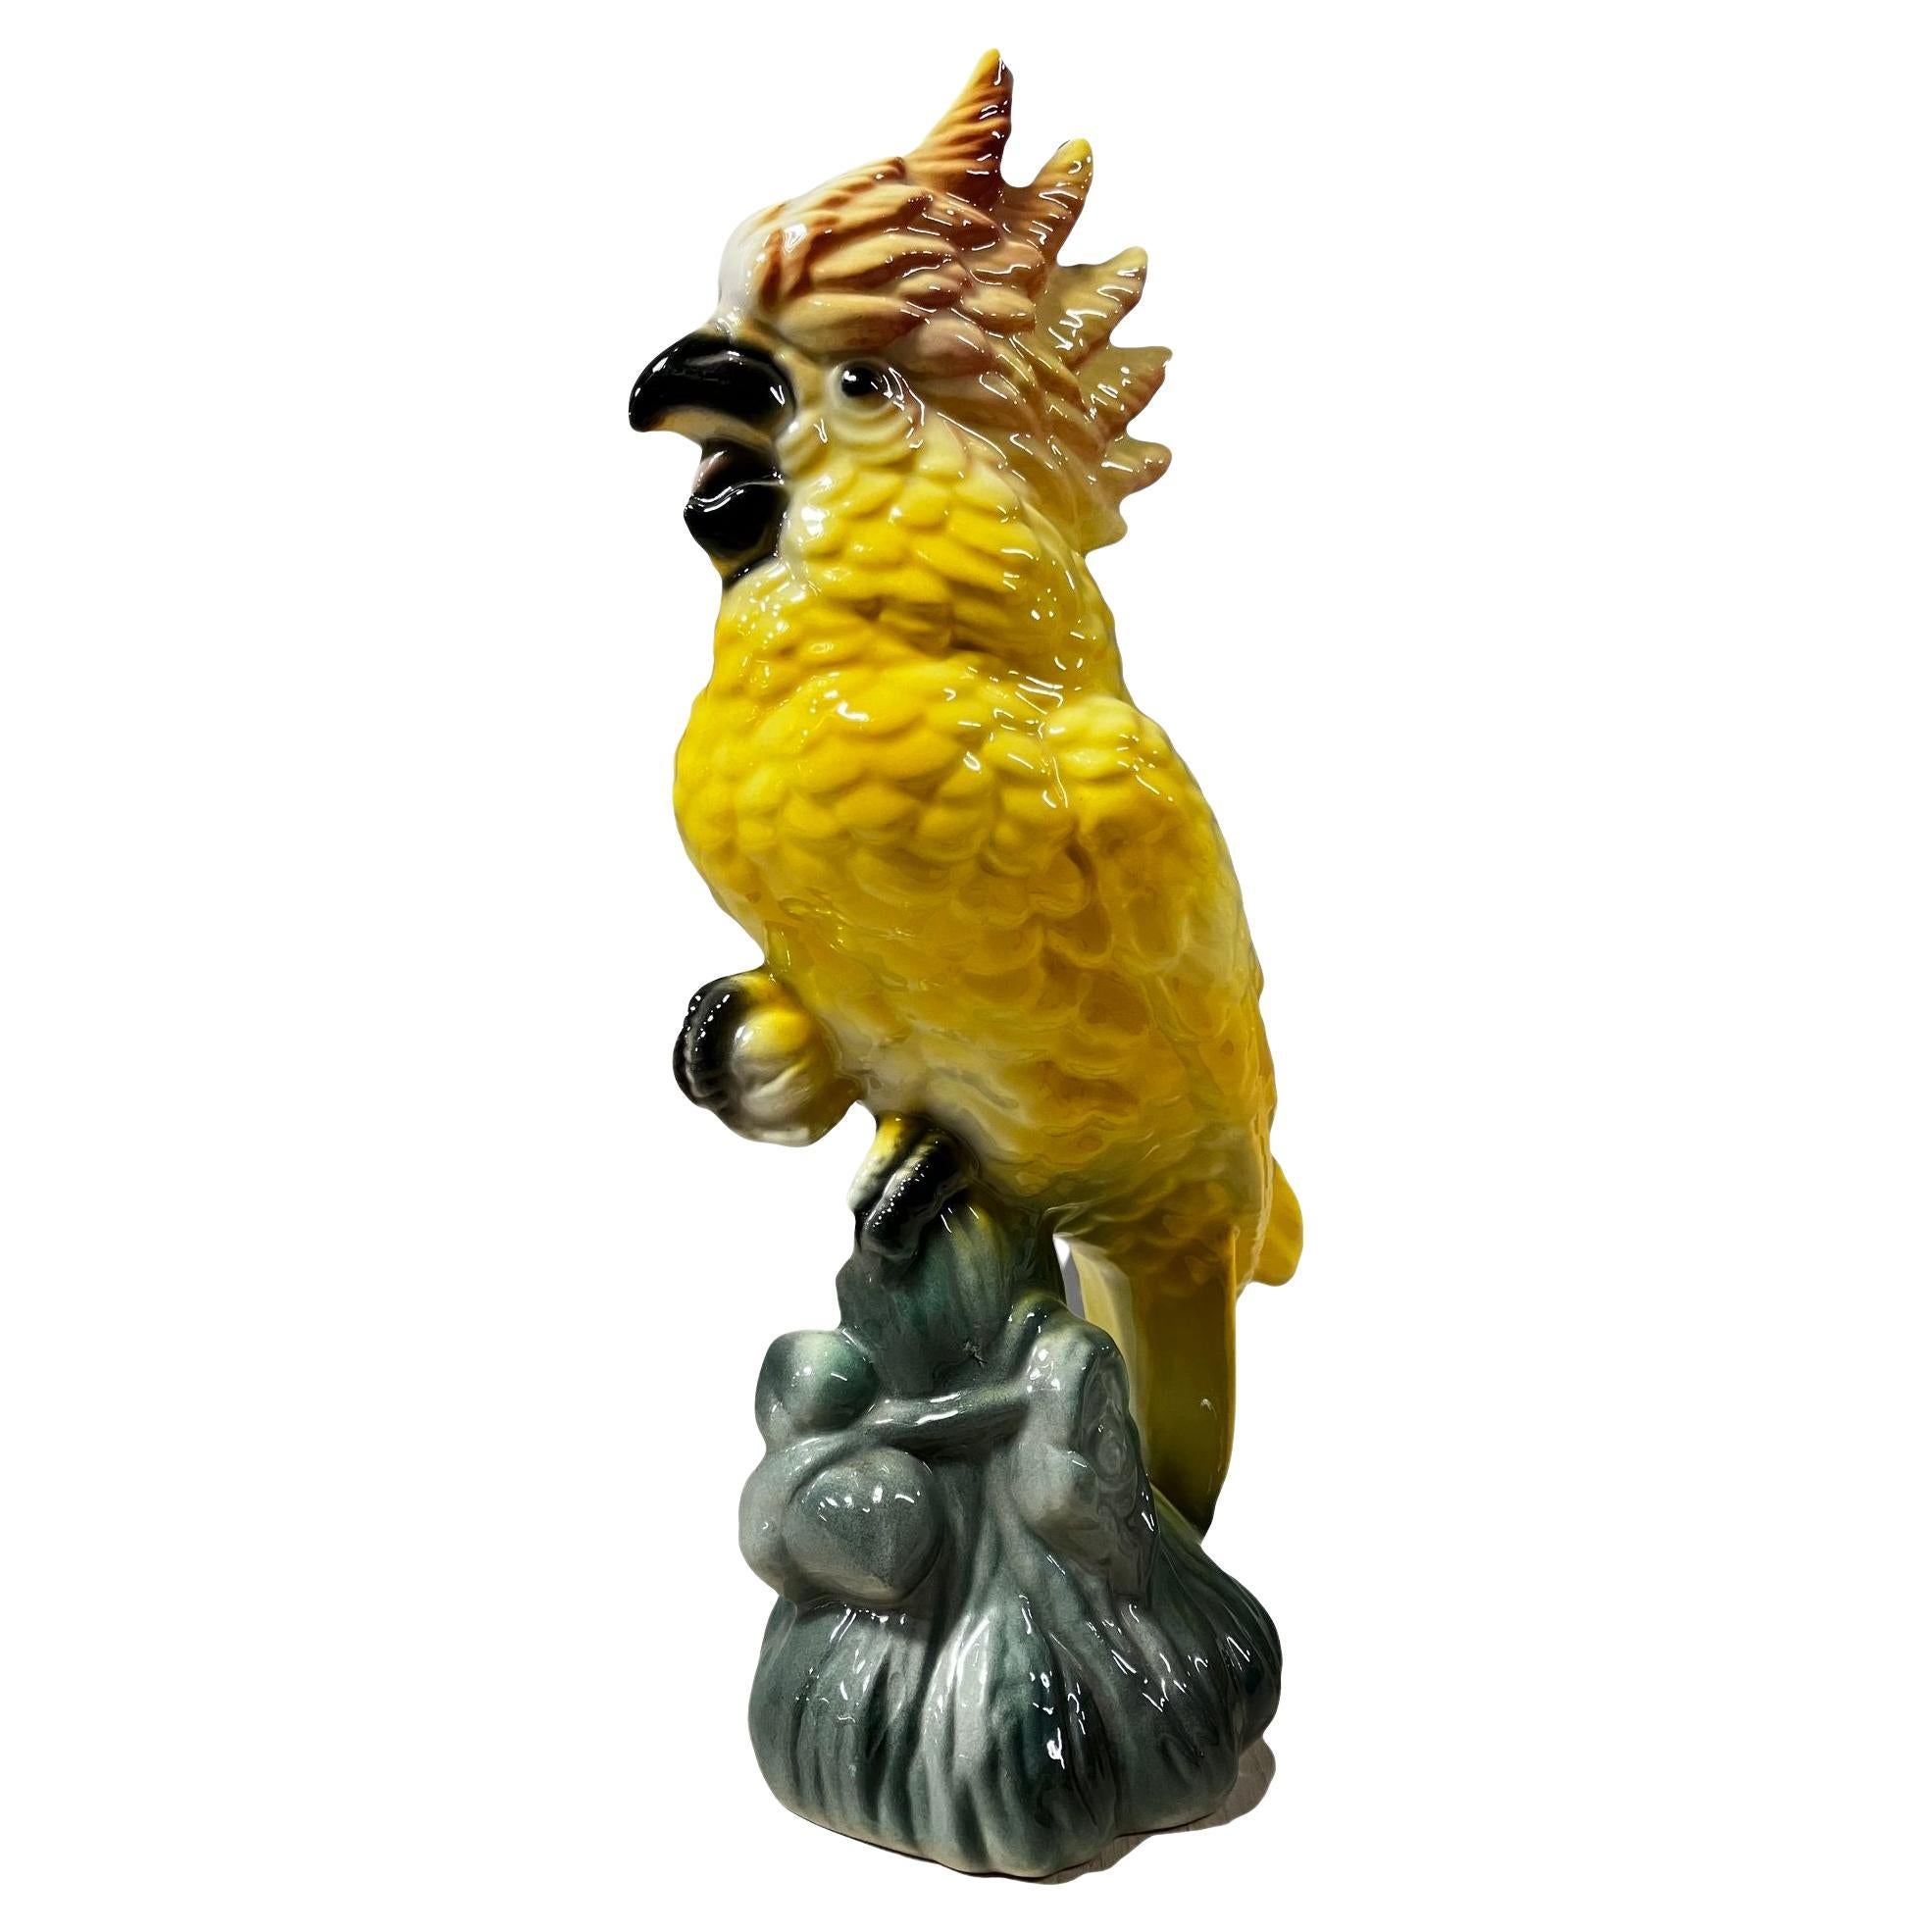 Statue de cacatoès tropical sur une branche en céramique de California Pottery